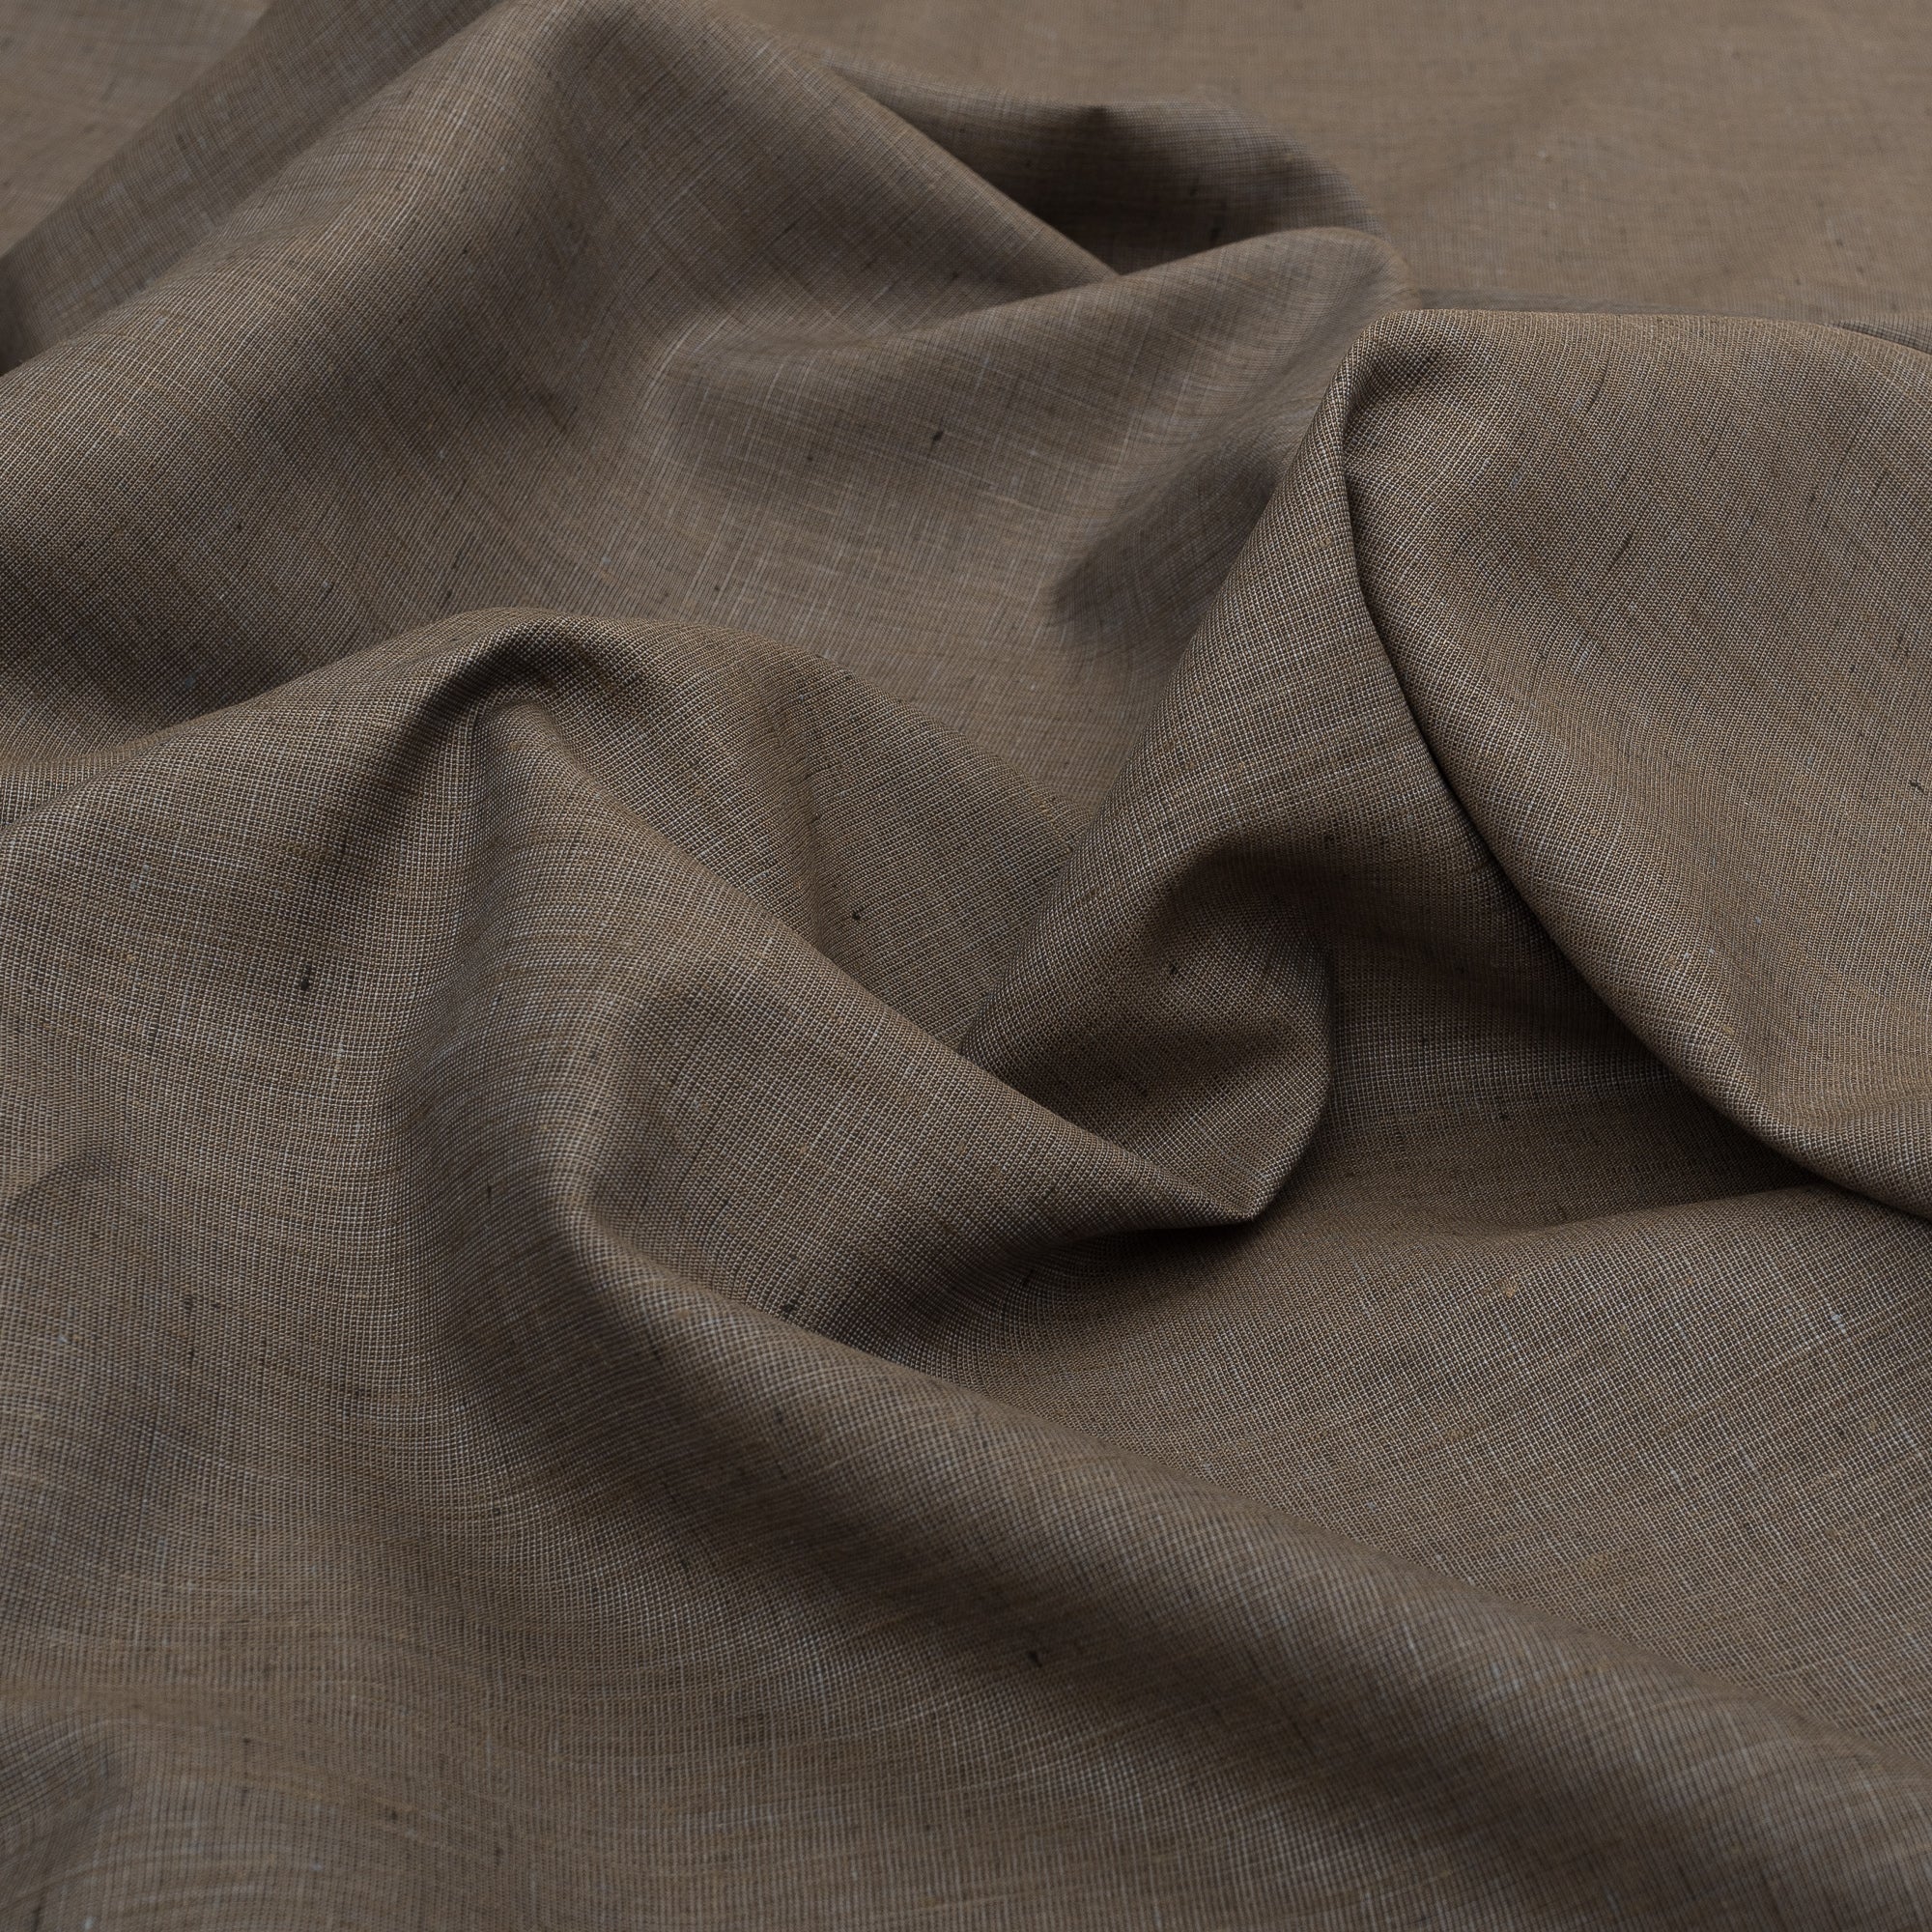 Clove 100% Linen Fabric